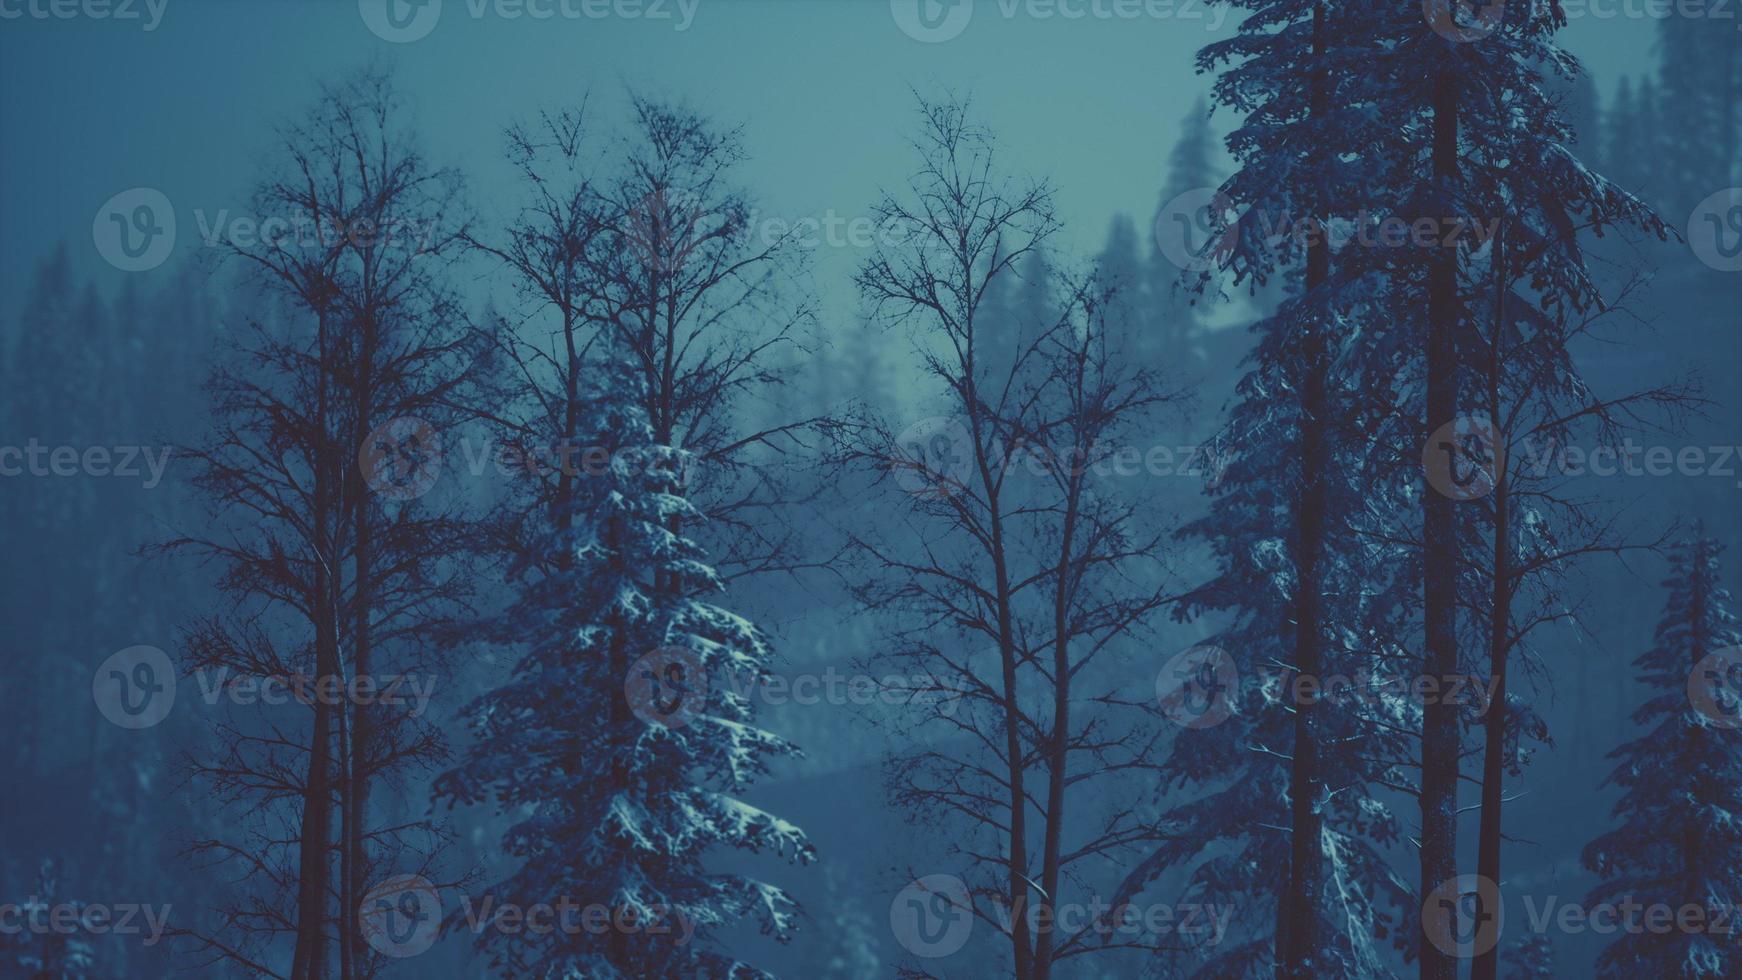 floresta de inverno de manhã nas montanhas dos cárpatos foto